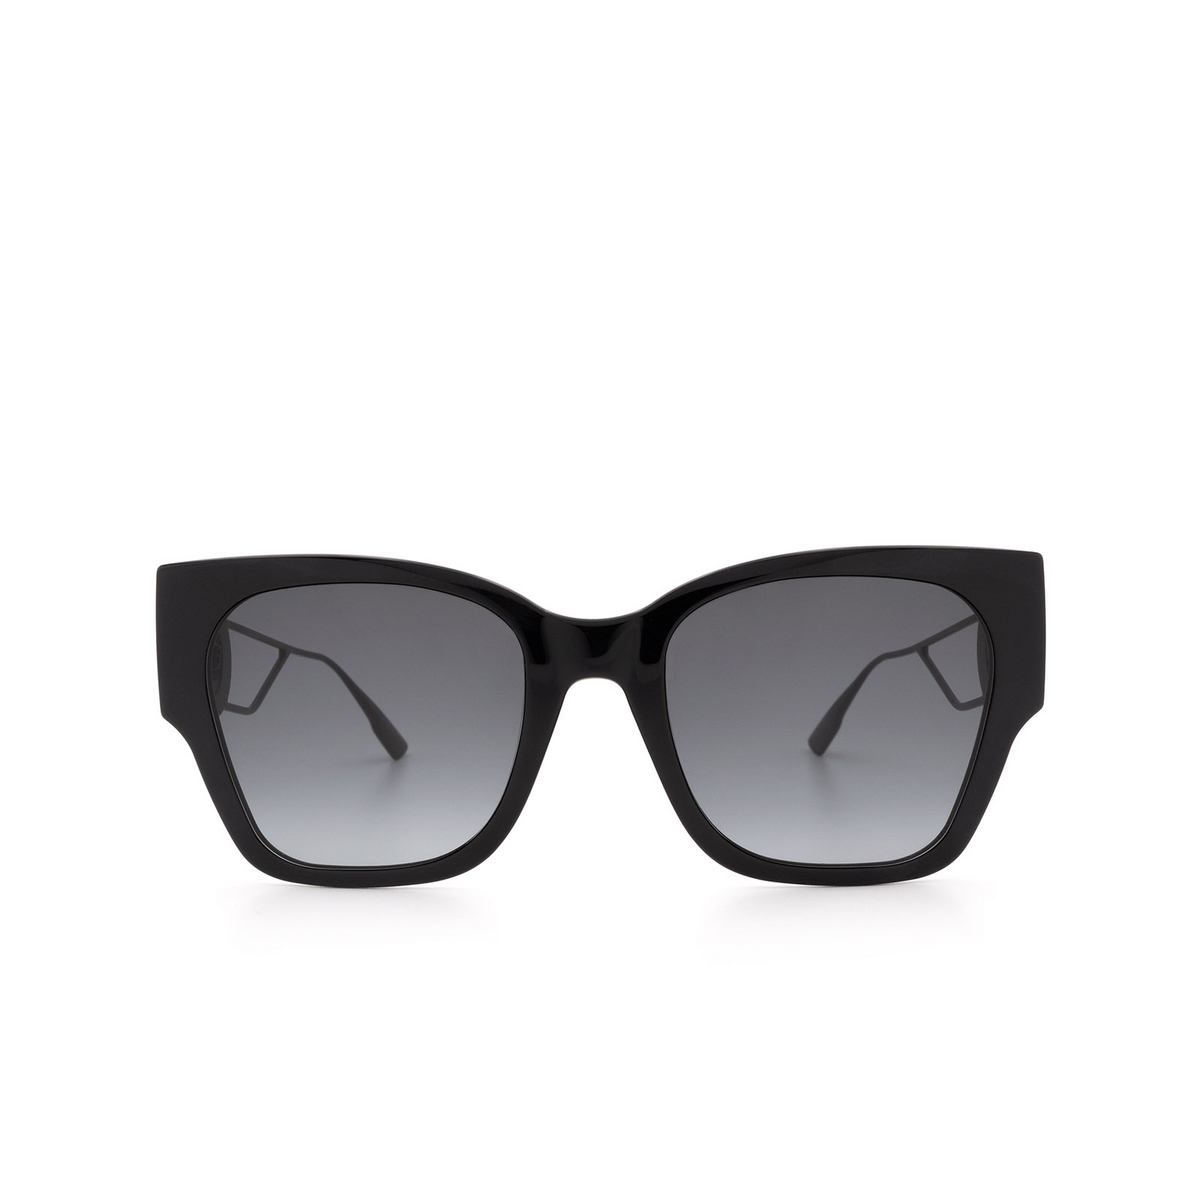 Dior 30MONTAIGNE1 Sunglasses 807/1I Black - front view